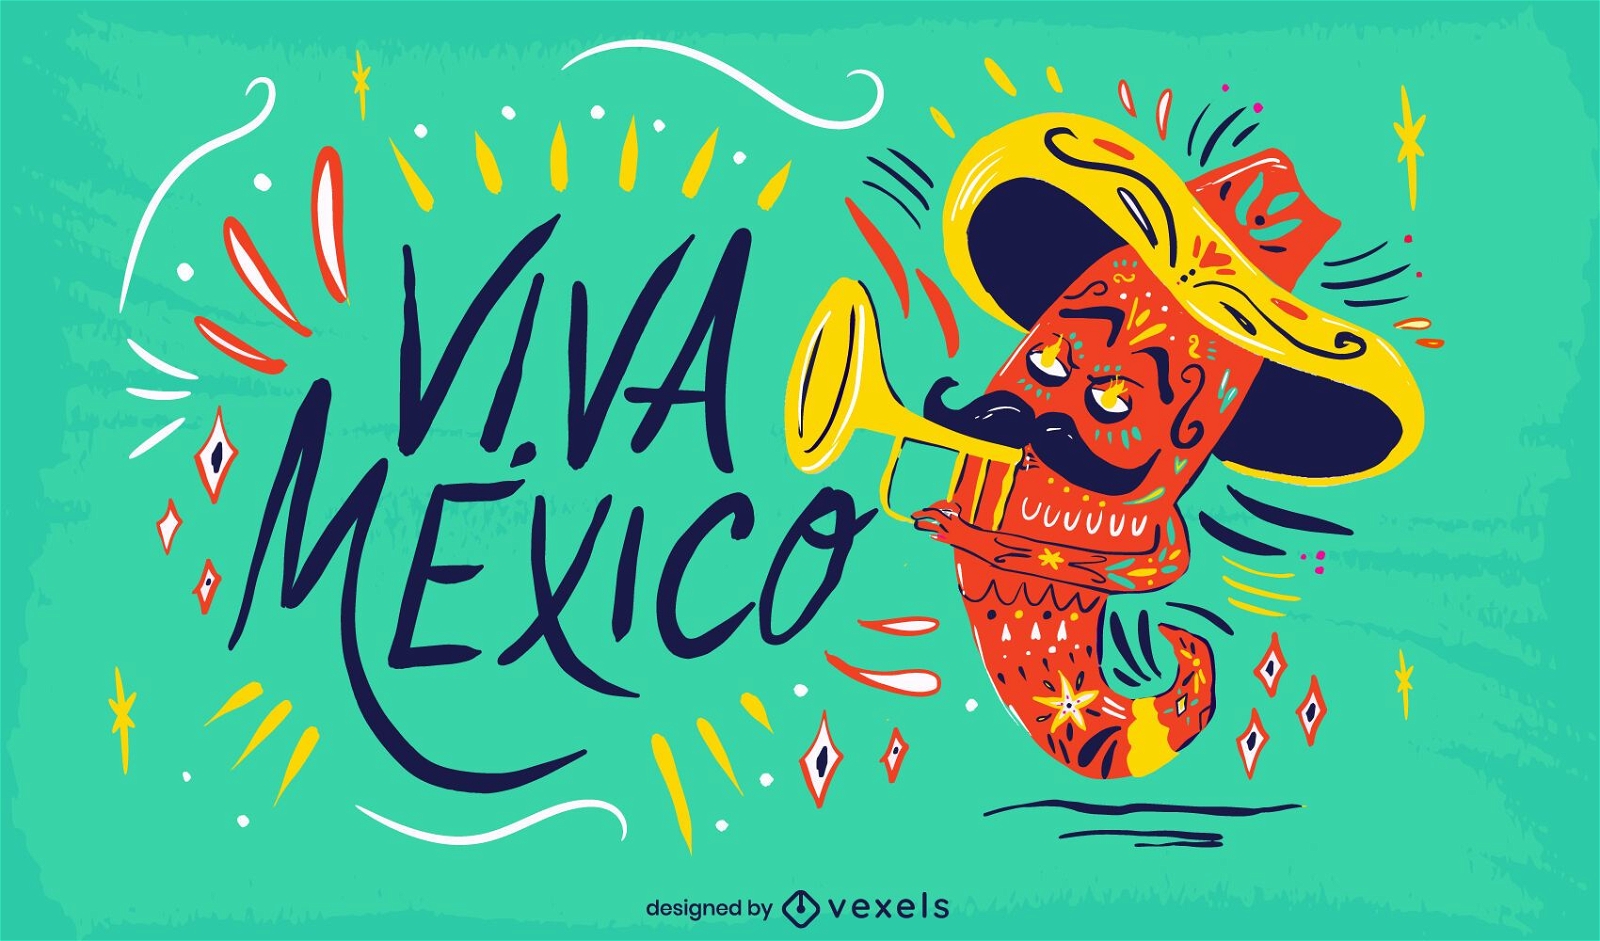 Projeto de ilustração Viva México